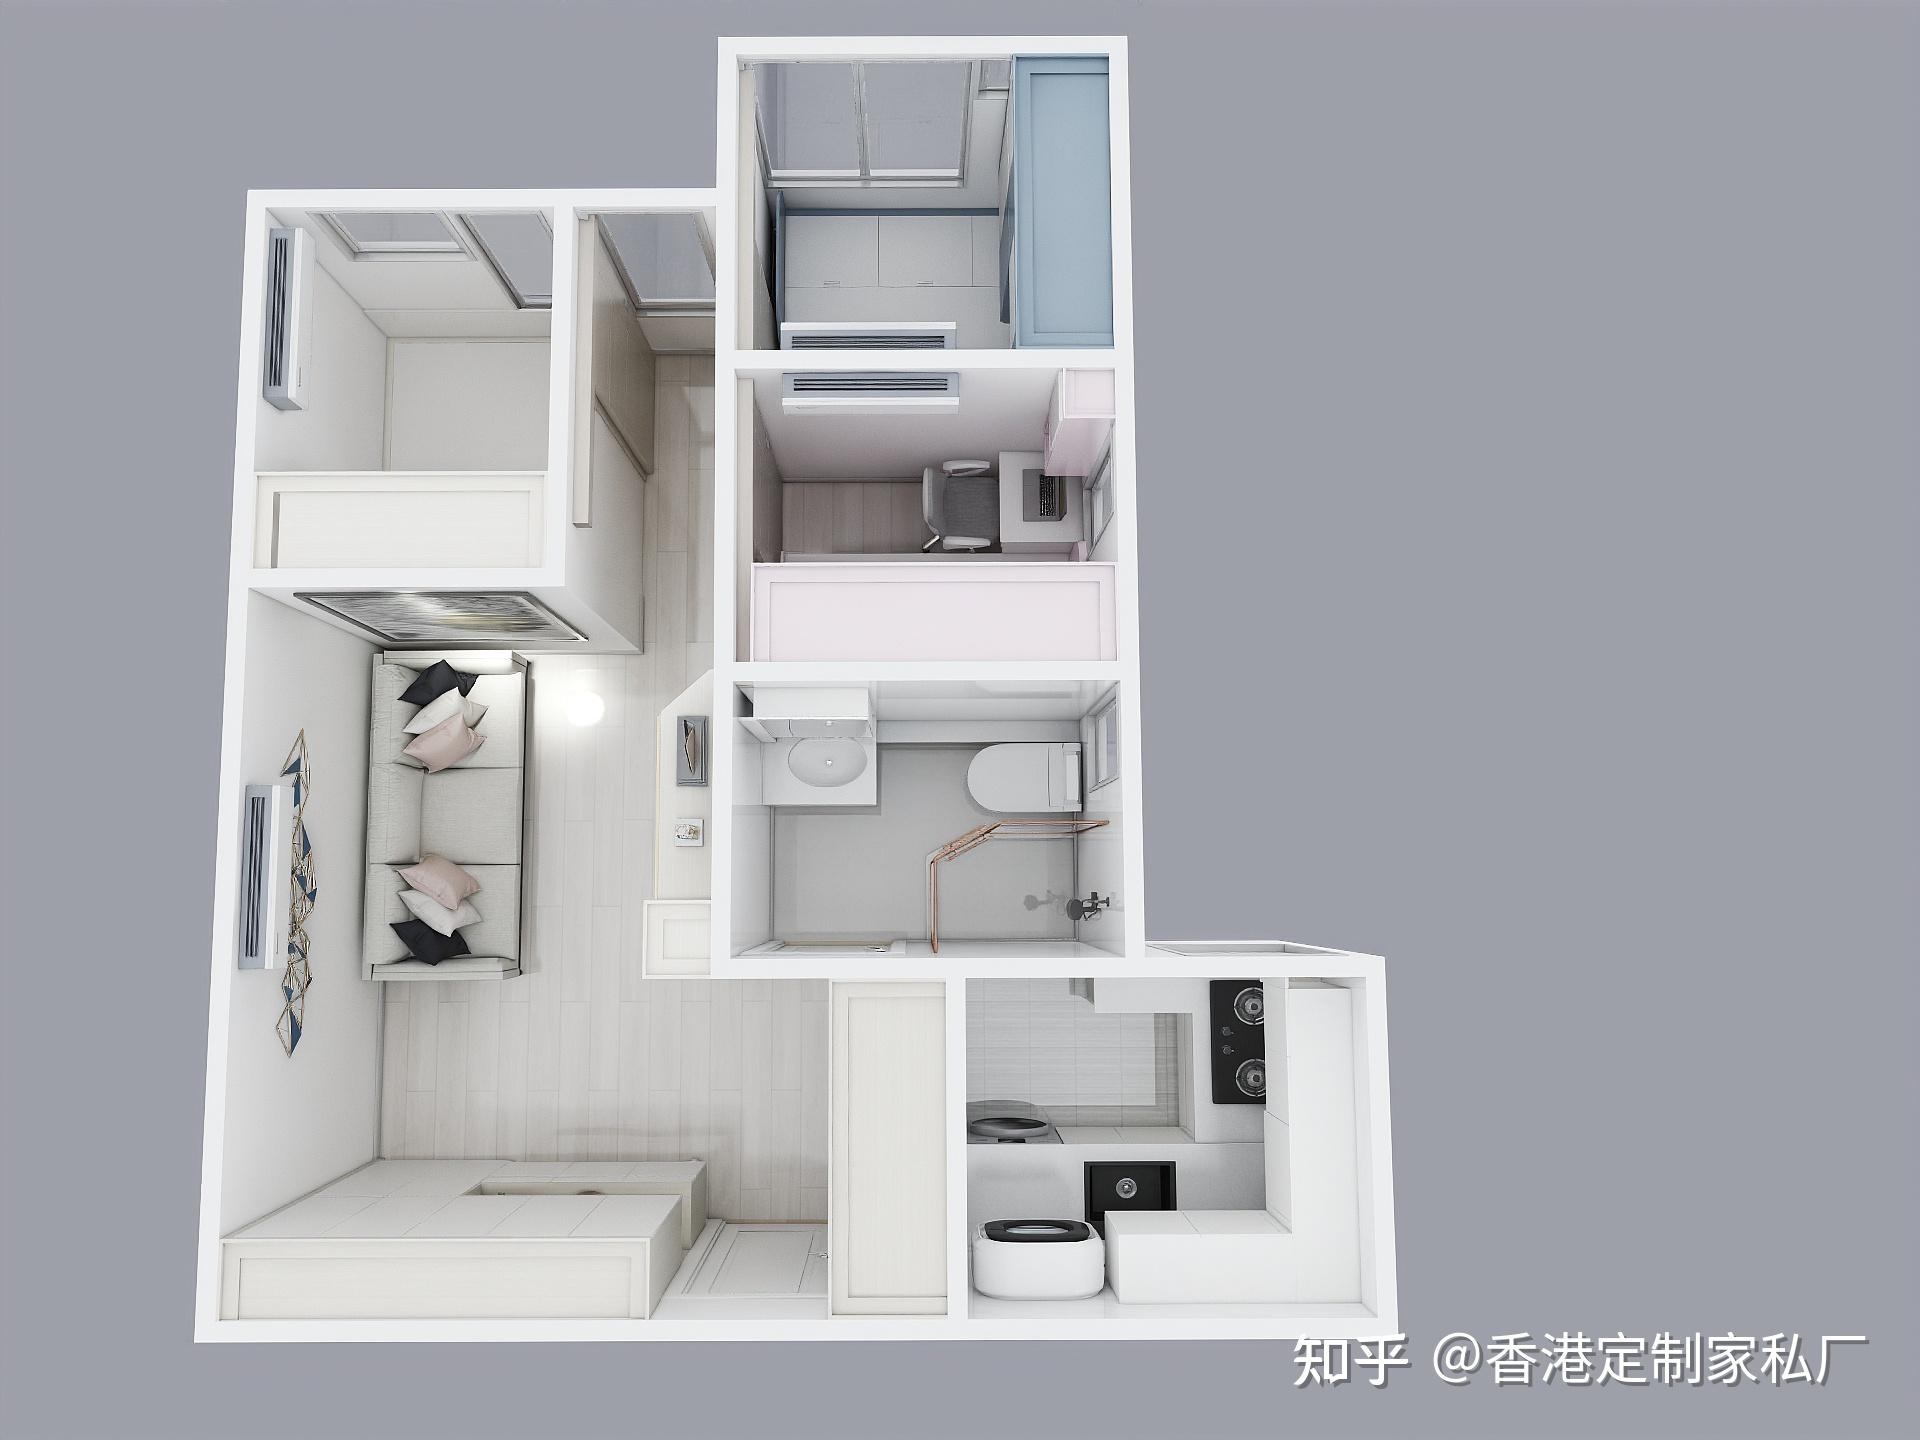 香港居屋公屋三四单位设计分享专注全屋定制